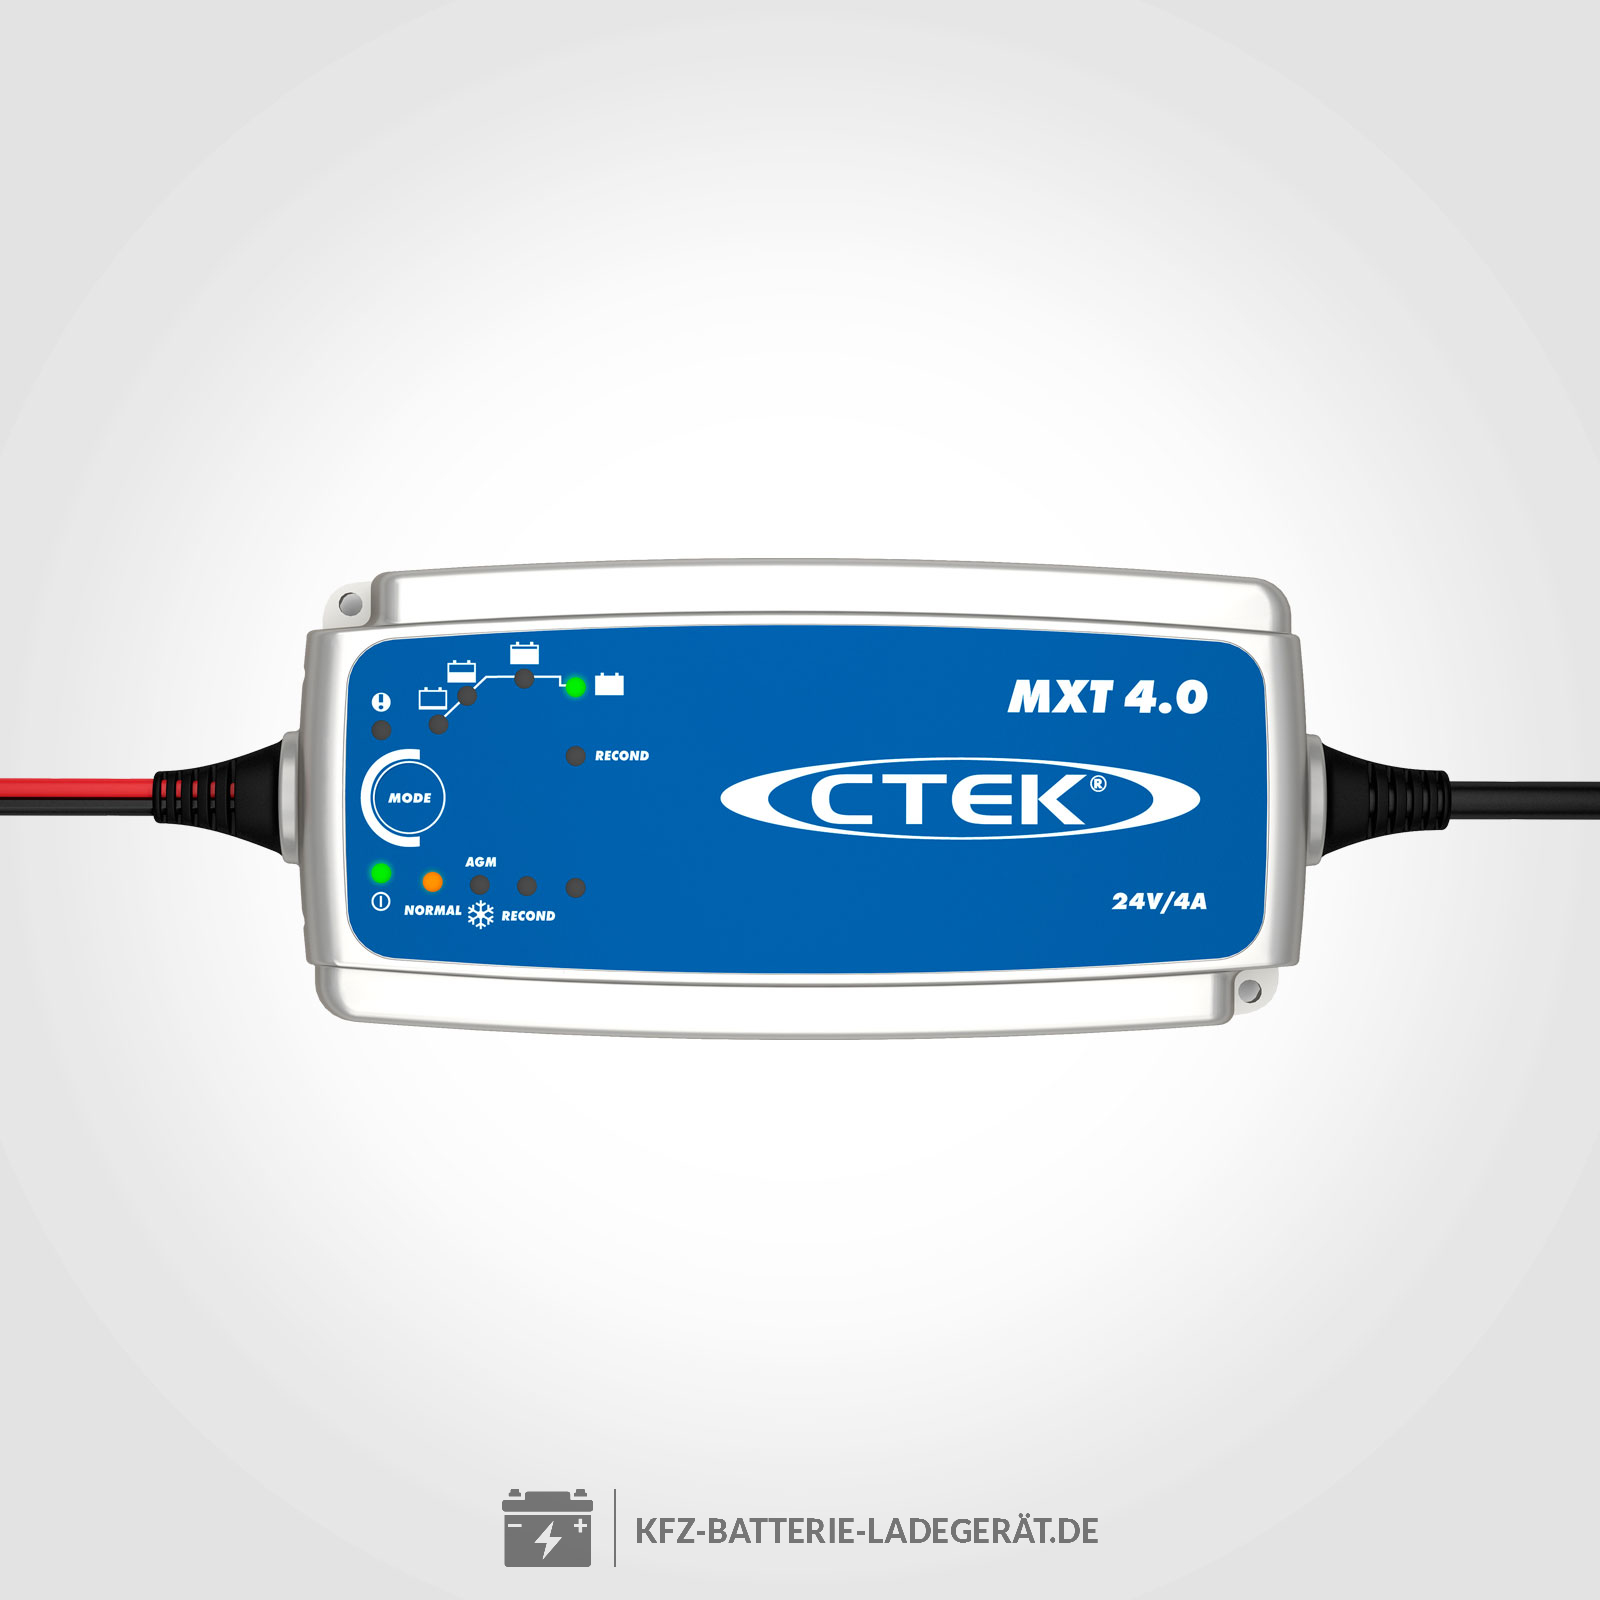 CTEK MXT 4.0 Ladegerät für 24V Batterien - CTEK Batterie Ladegeräte